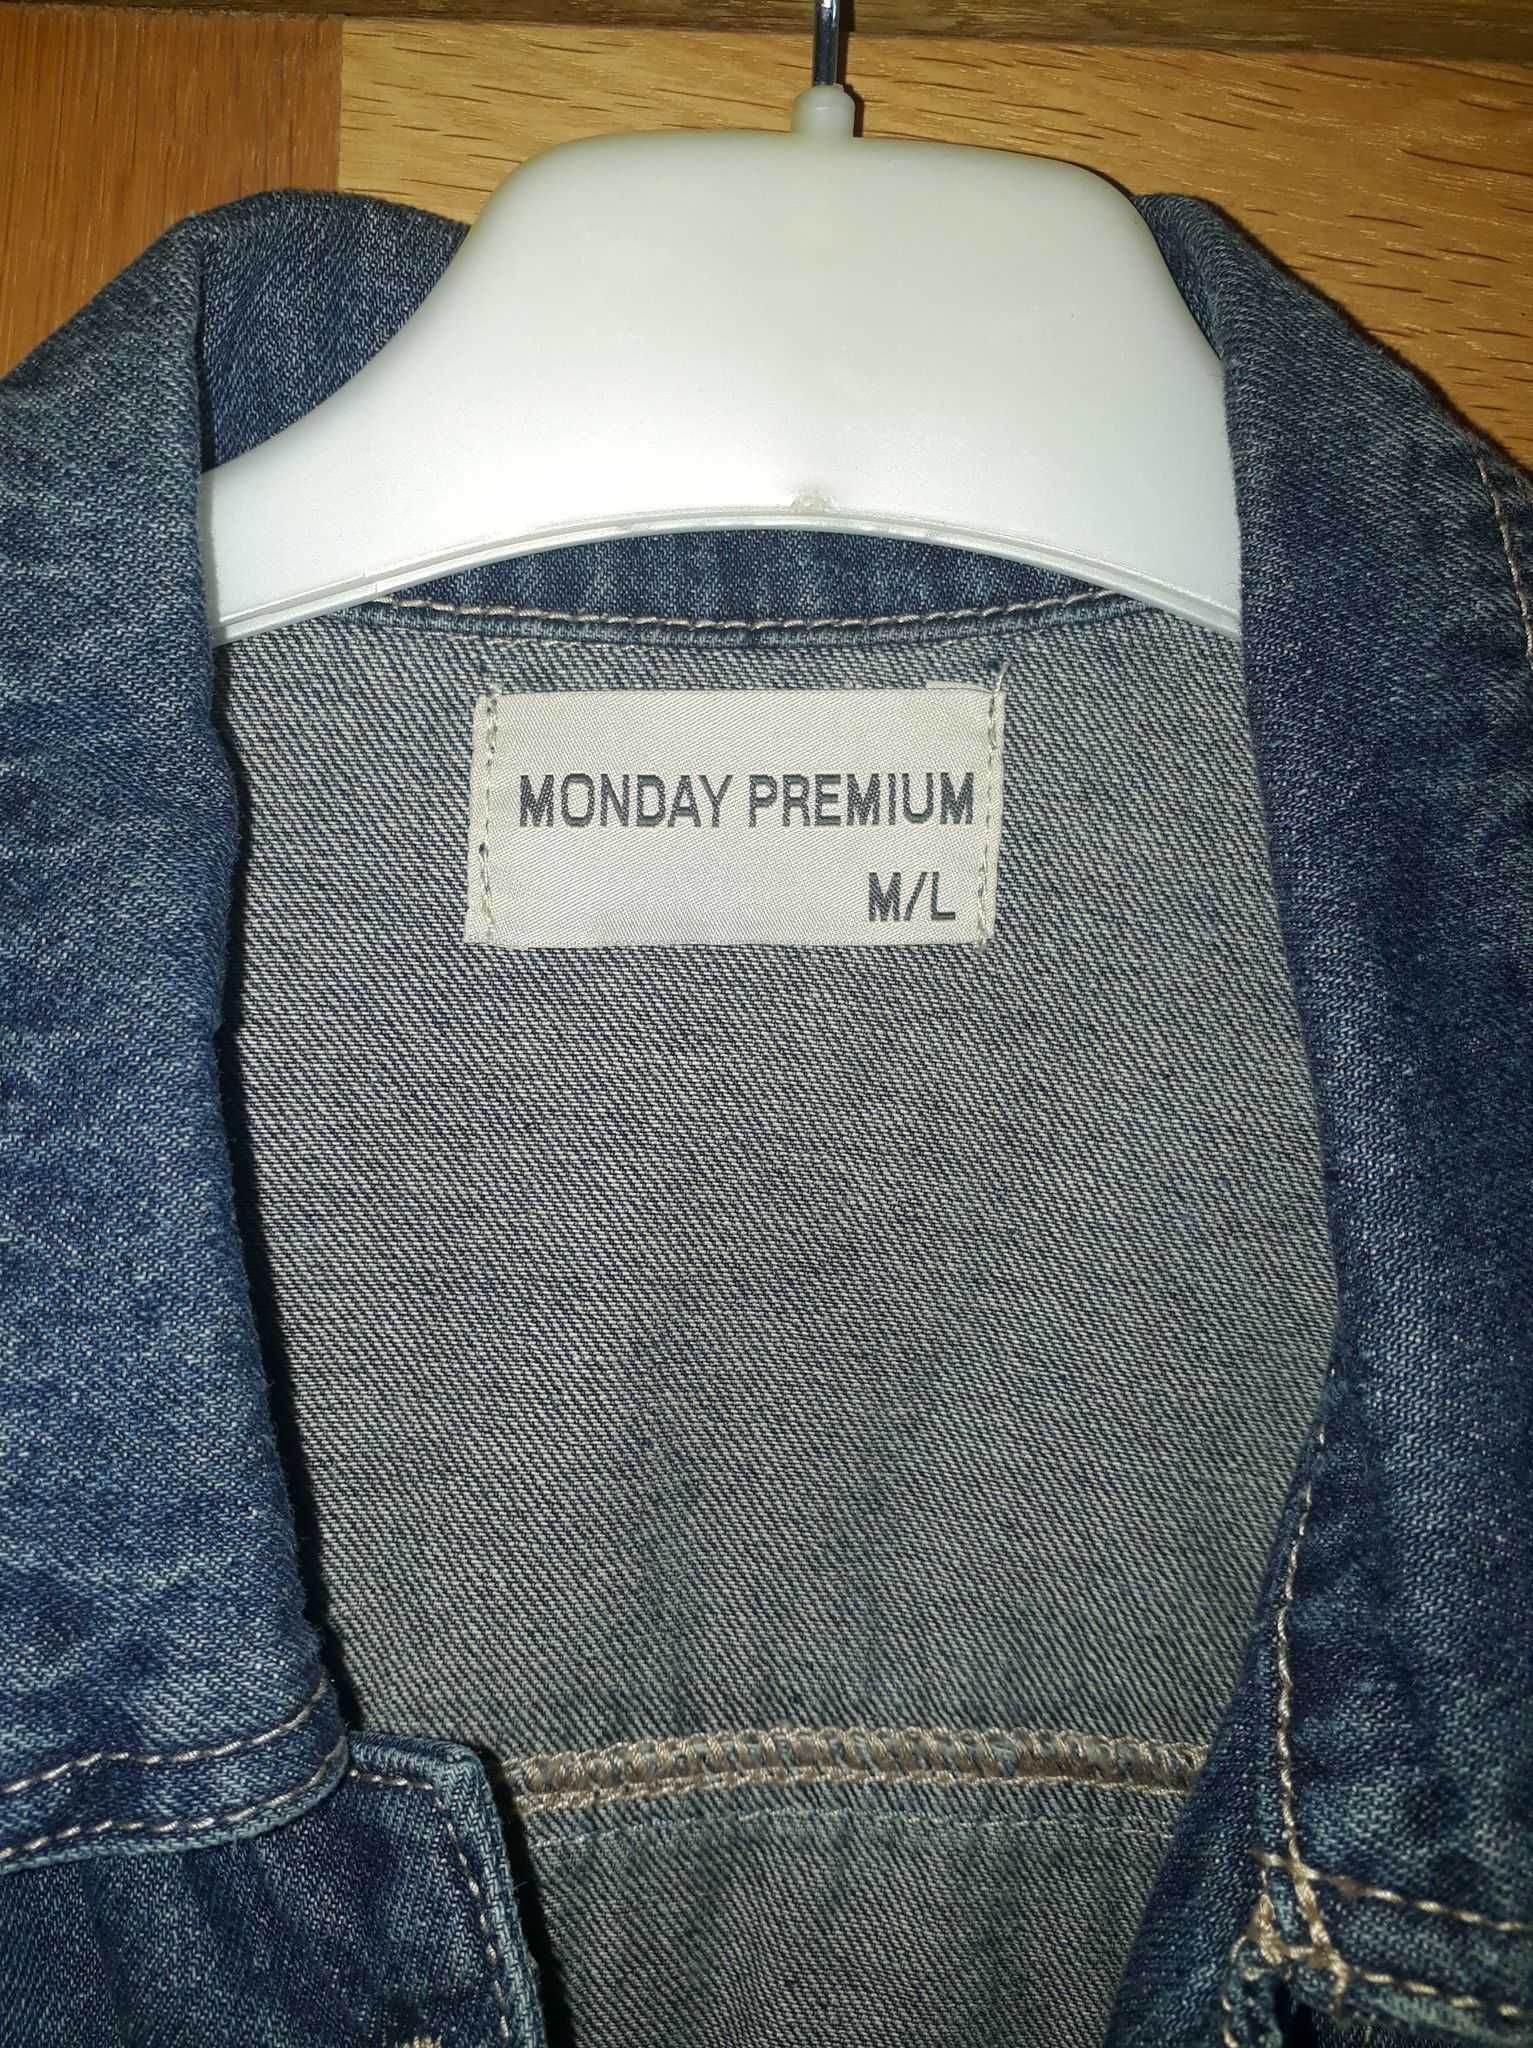 Nowa damska kurtka jeansowa/dżinsowa Monday Premium, romiar M, okazja!